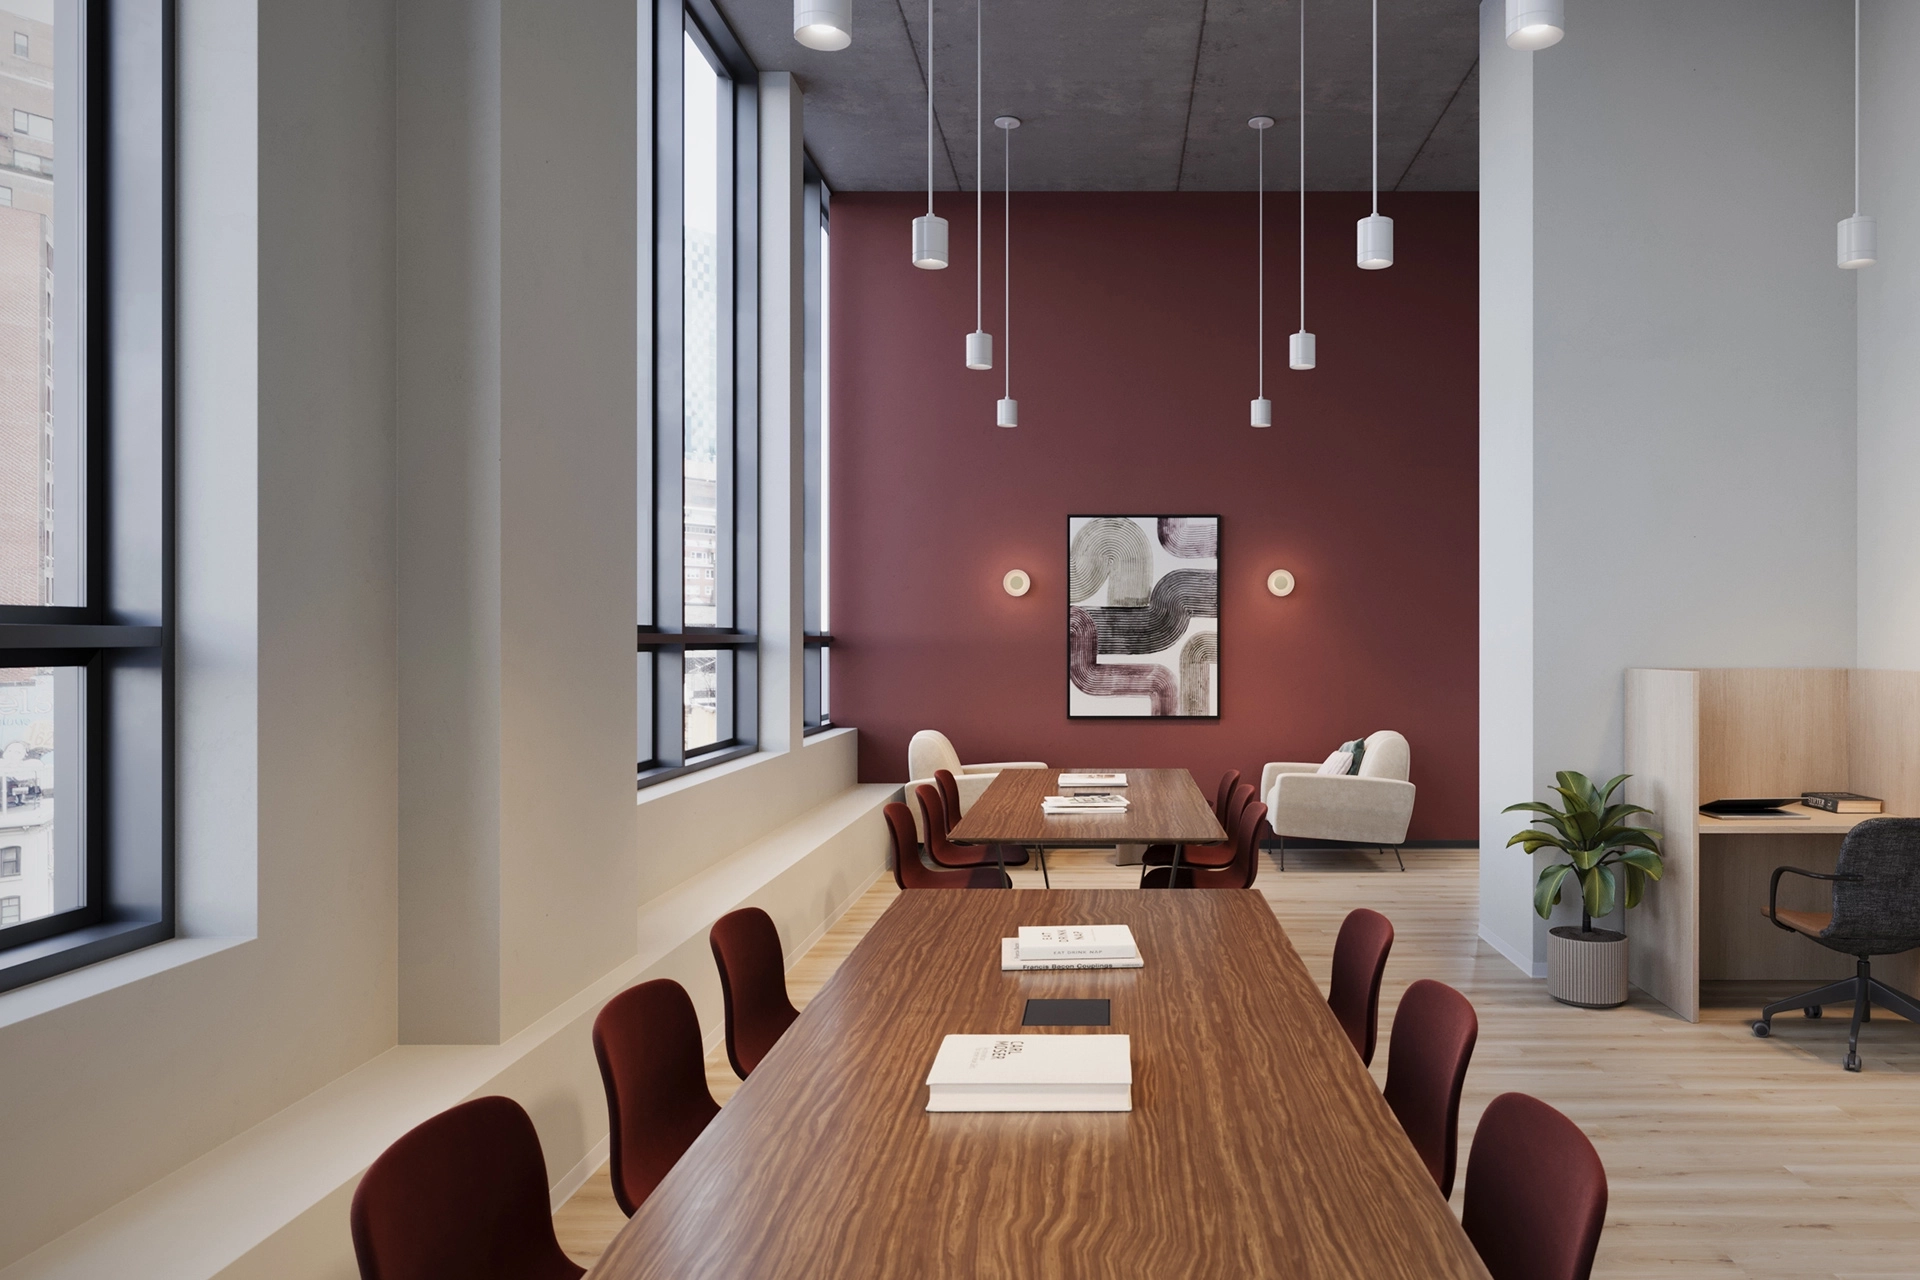 Moderne coworking-vergaderruimte met een lange houten tafel, een hanglamp en een bordeauxrode accentmuur met kunstwerken.